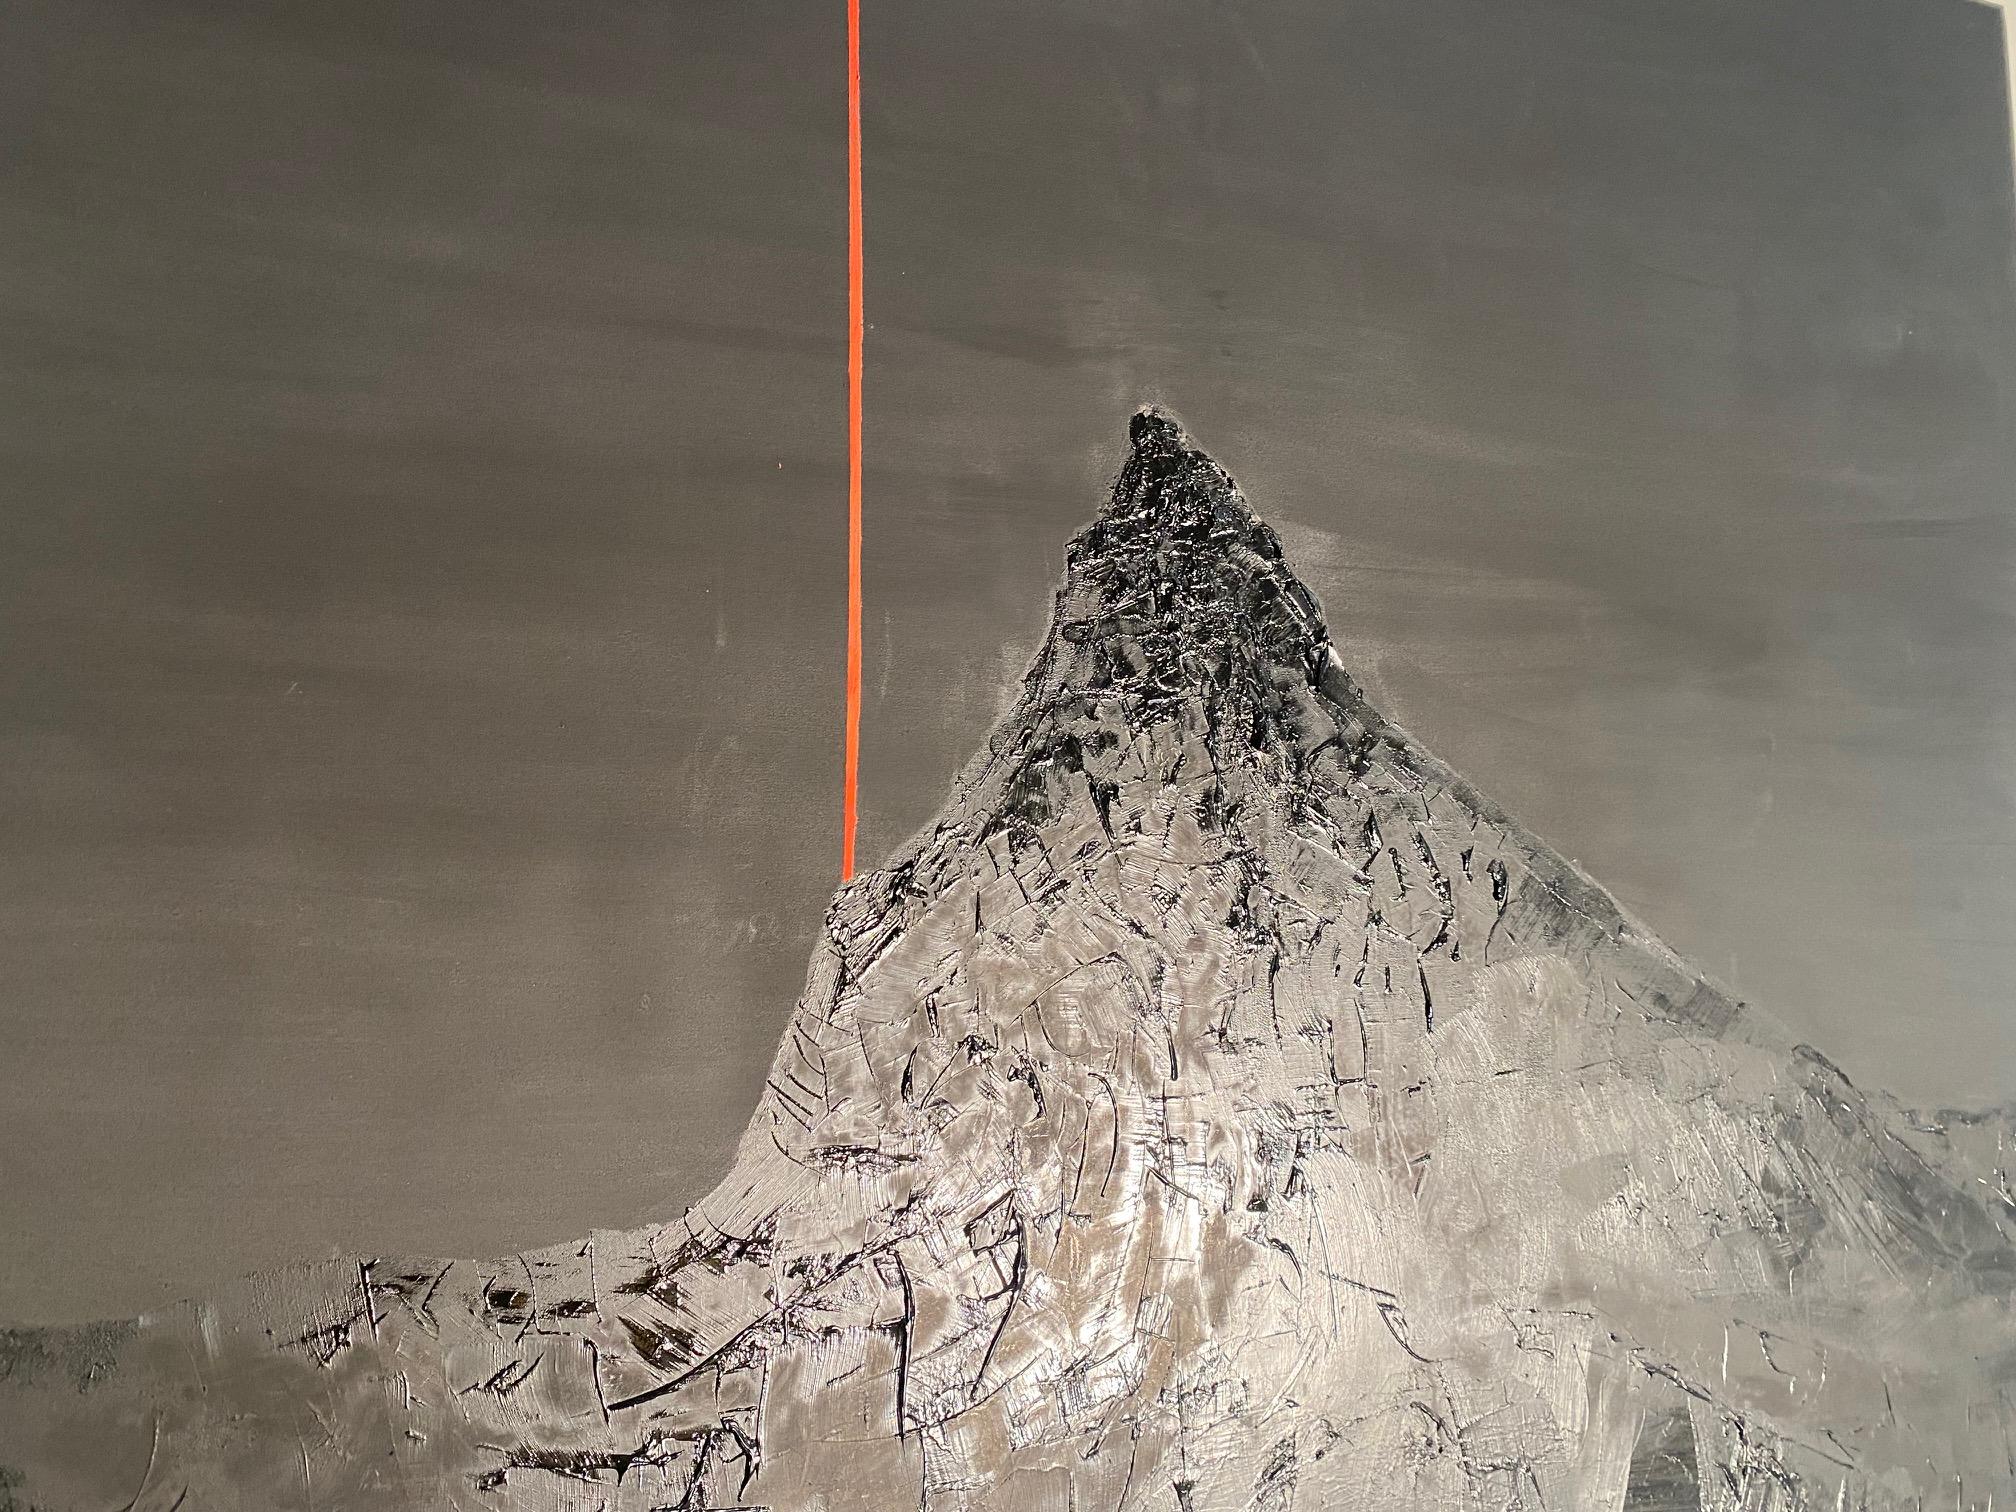 Matterhorn - gamme de montagnes noires et blanches expressionnistes contemporaines avec rouge - Expressionnisme abstrait Painting par Willi Bucher